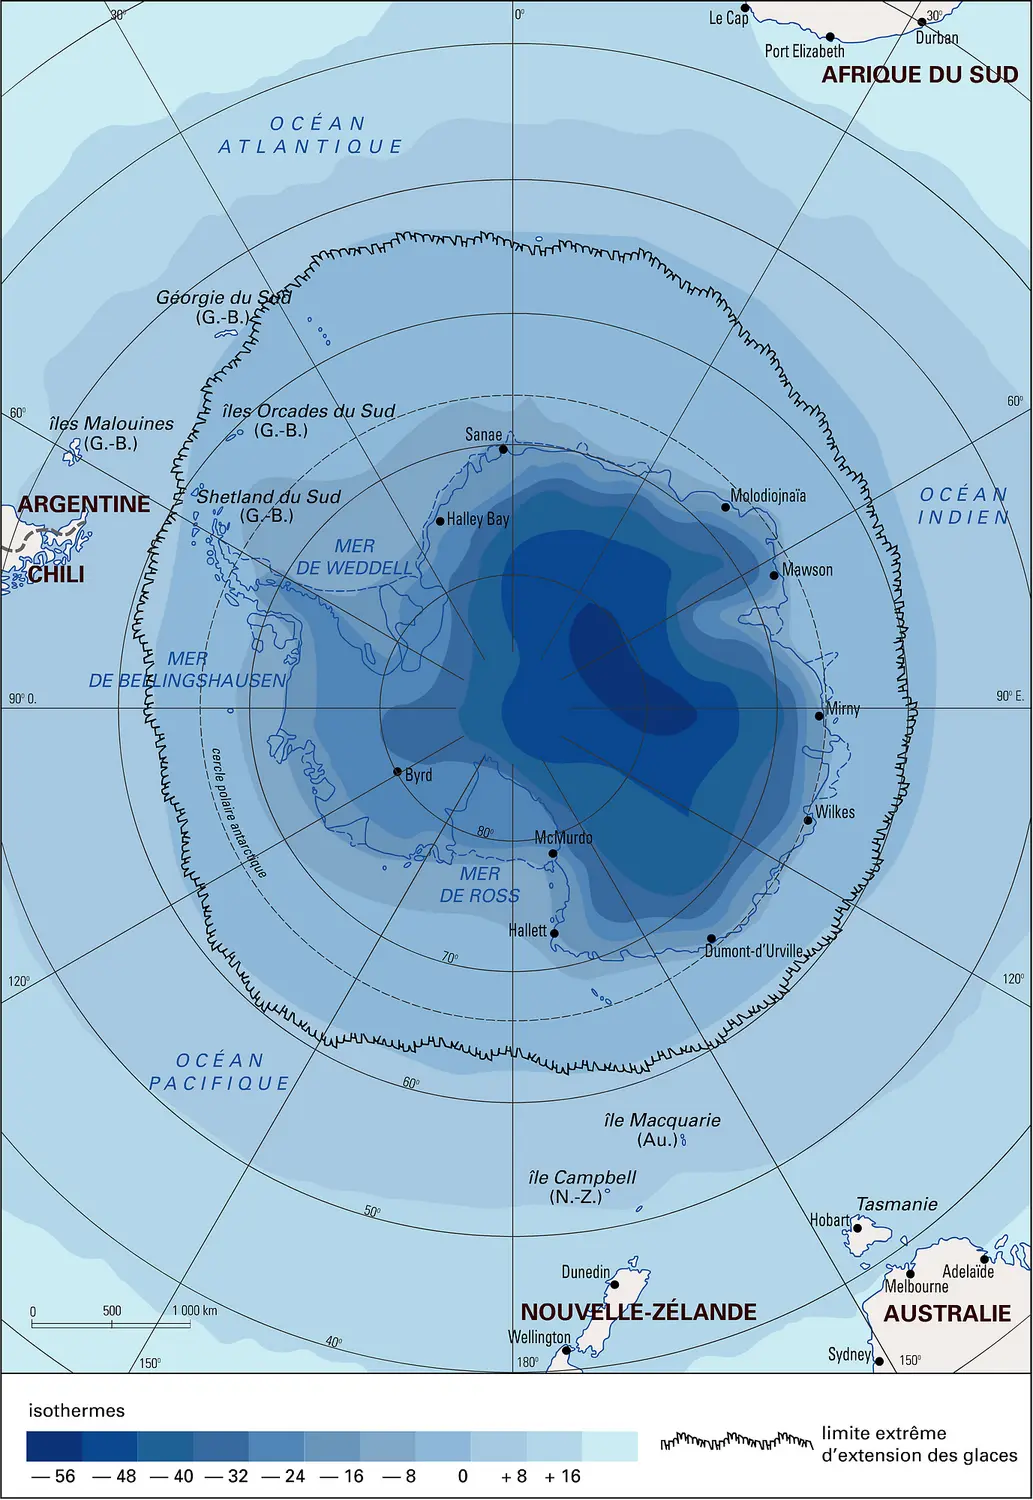 Antarctique : température moyenne annuelle au niveau 0.